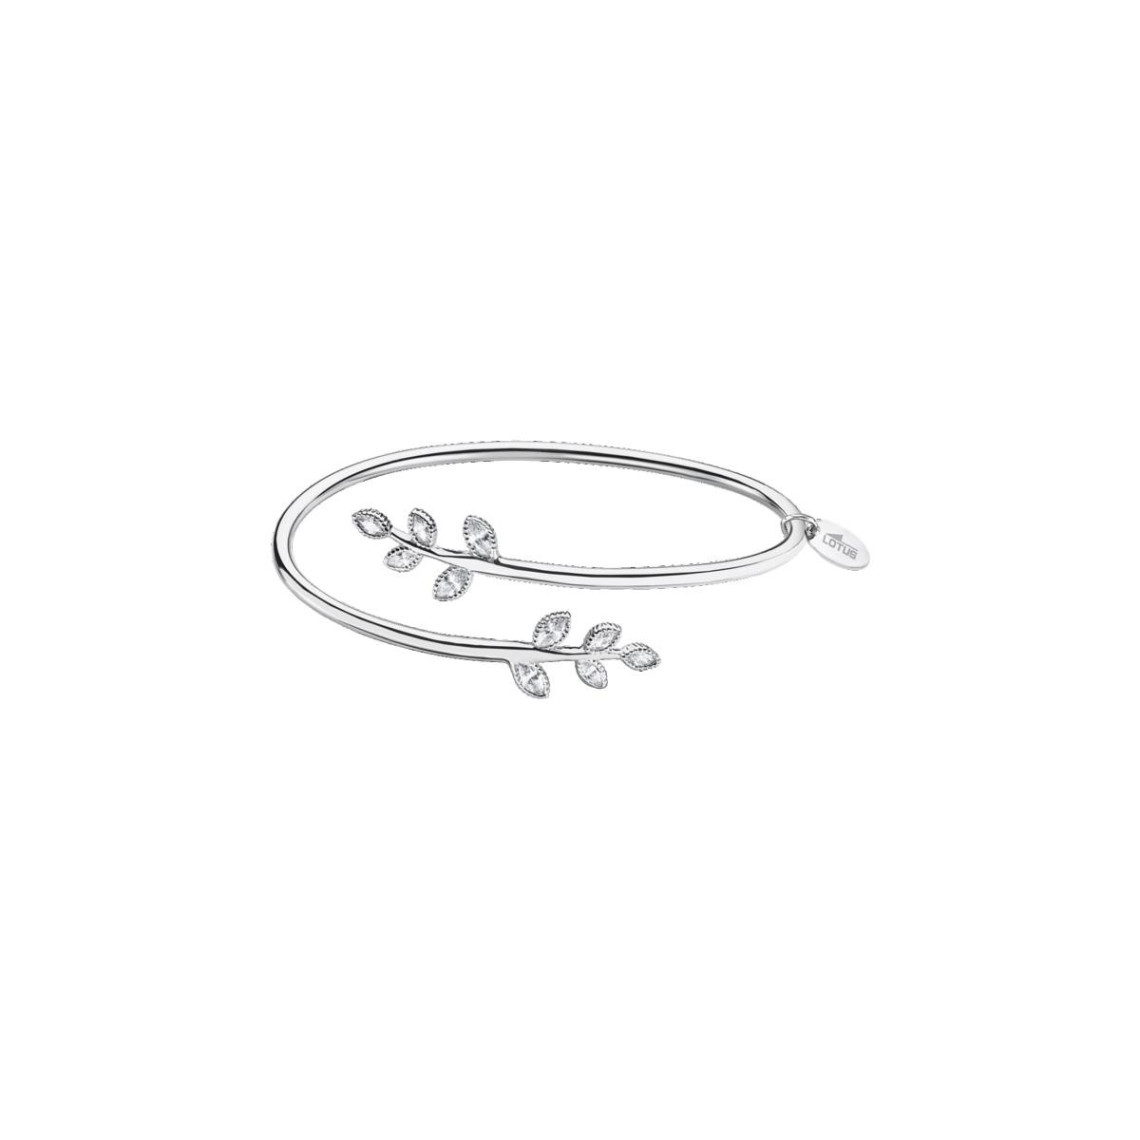 bracelet lotus silver pure essentiel lp1783-2-1 - braceletrigide argent feuille inverseeslotus silver